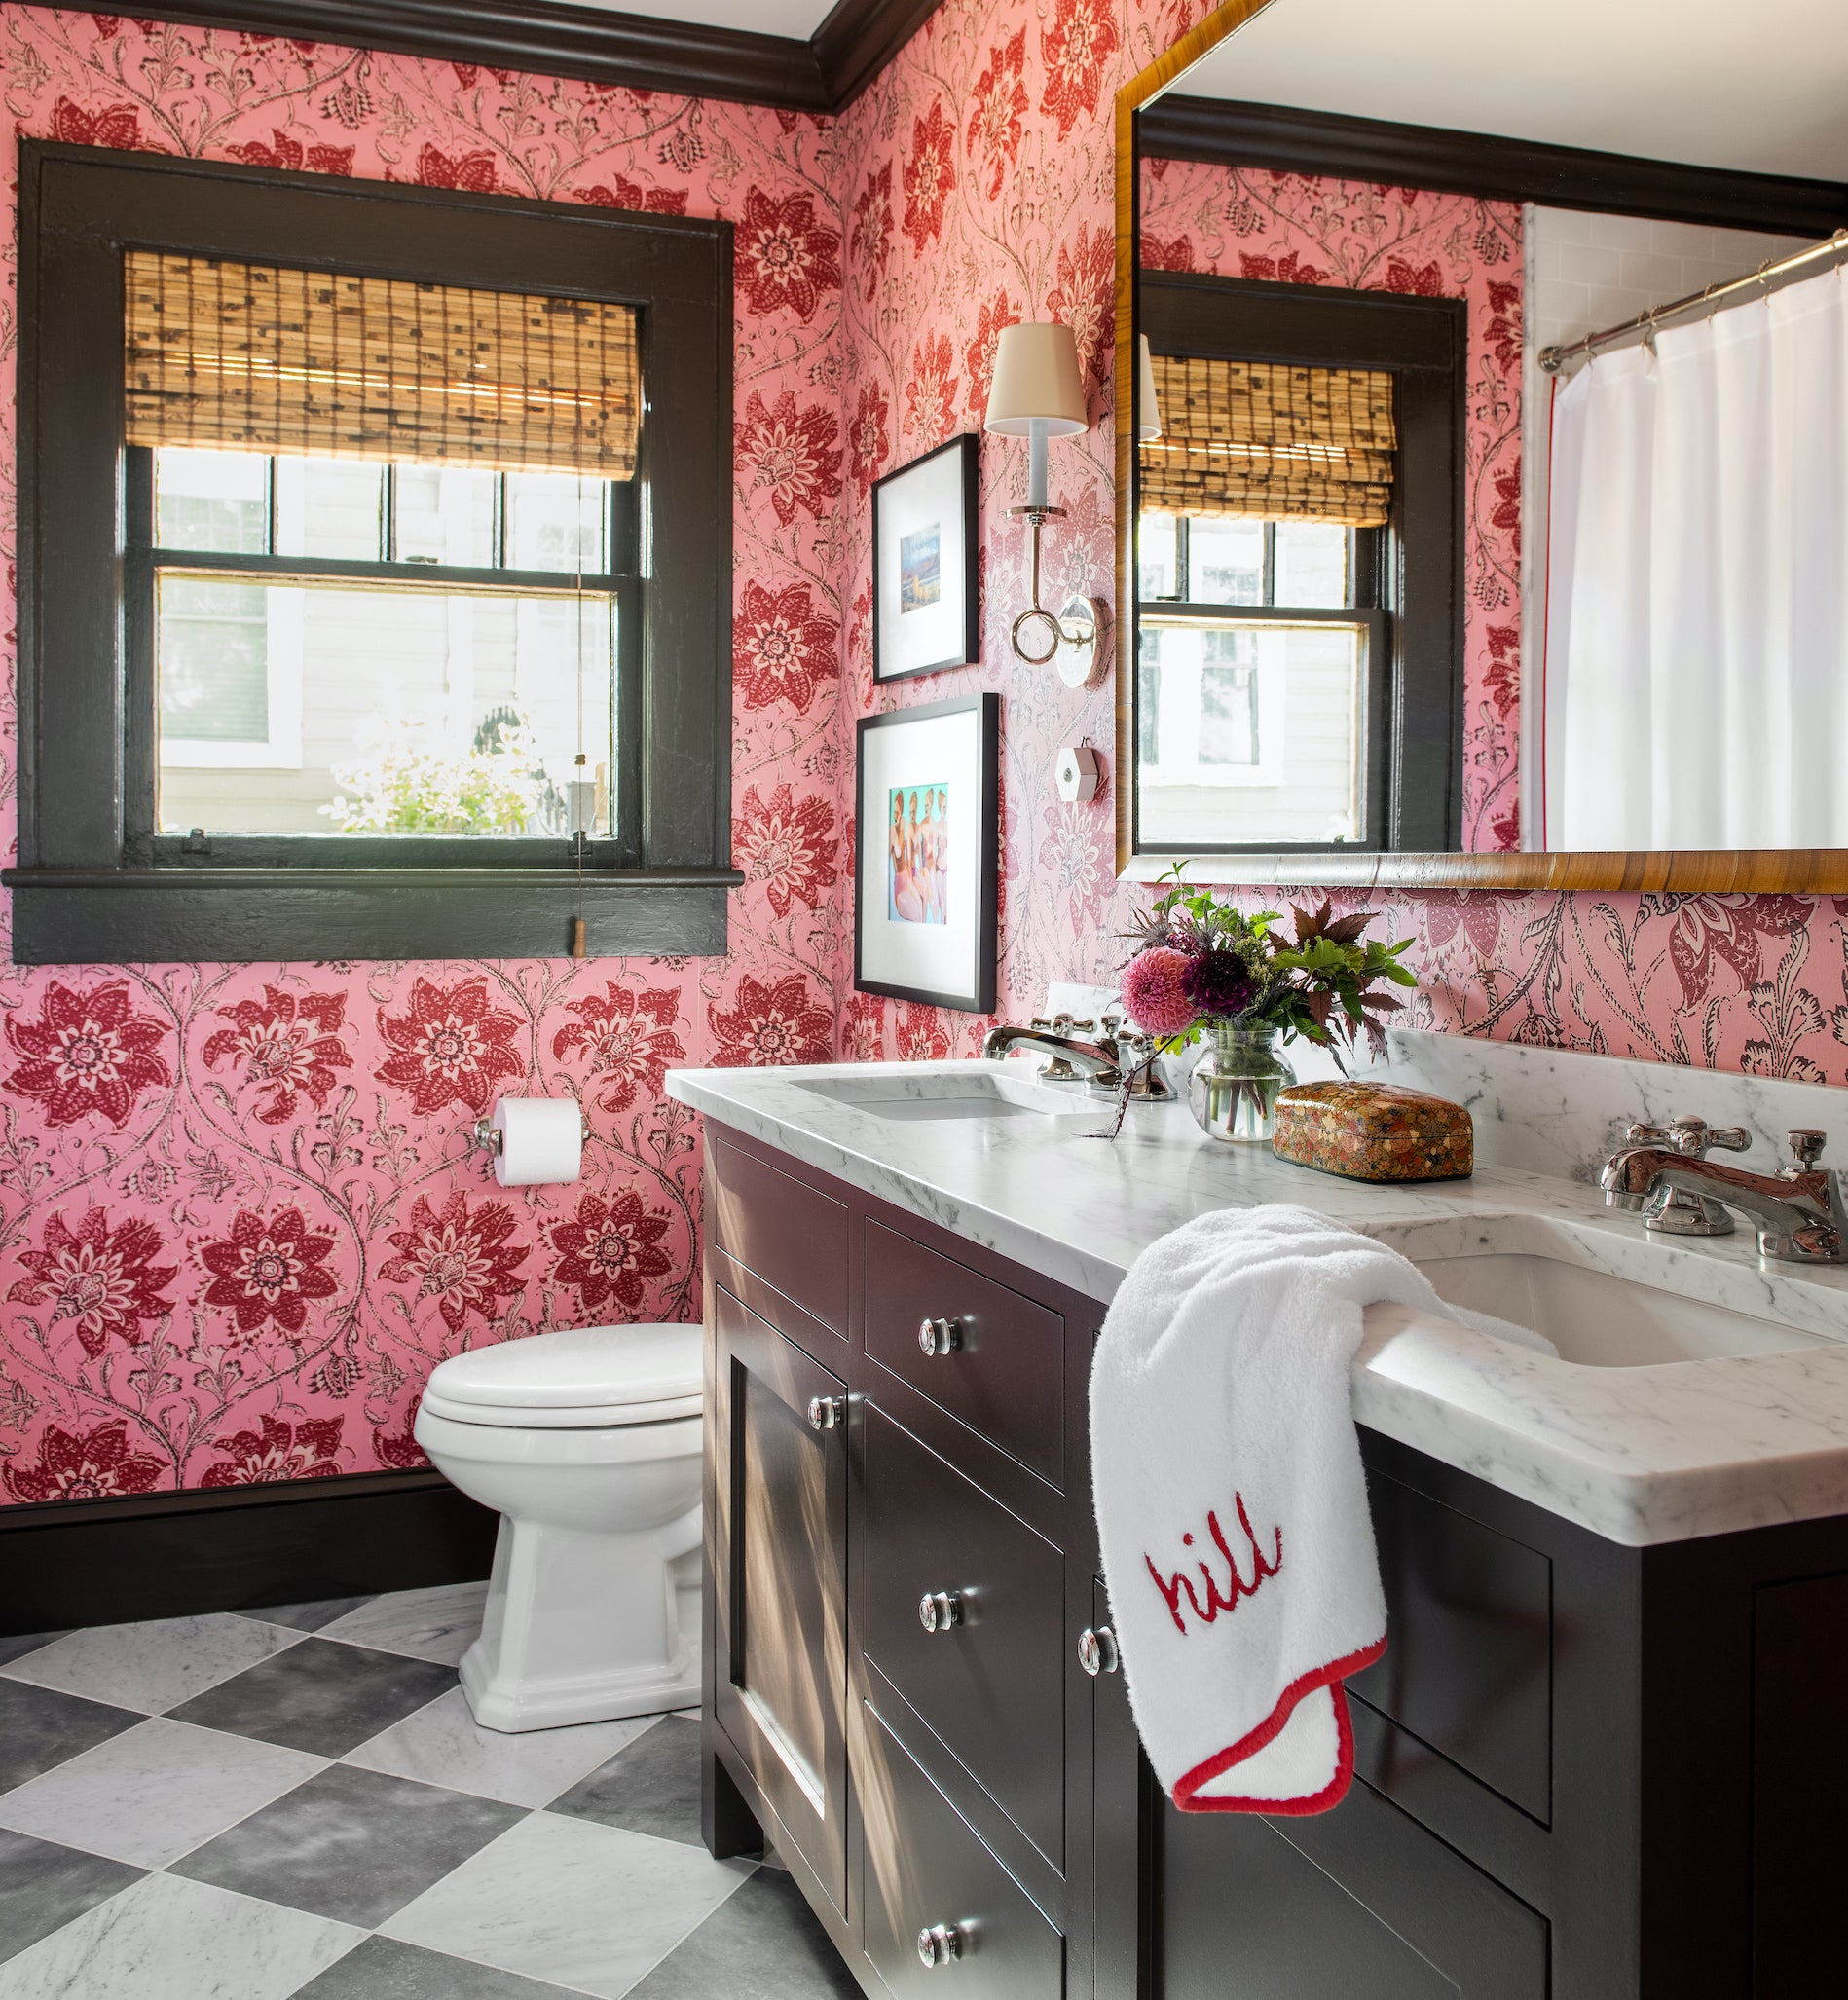 Bathroom Decor Ideas, Pink Aesthetic, Shell Rug